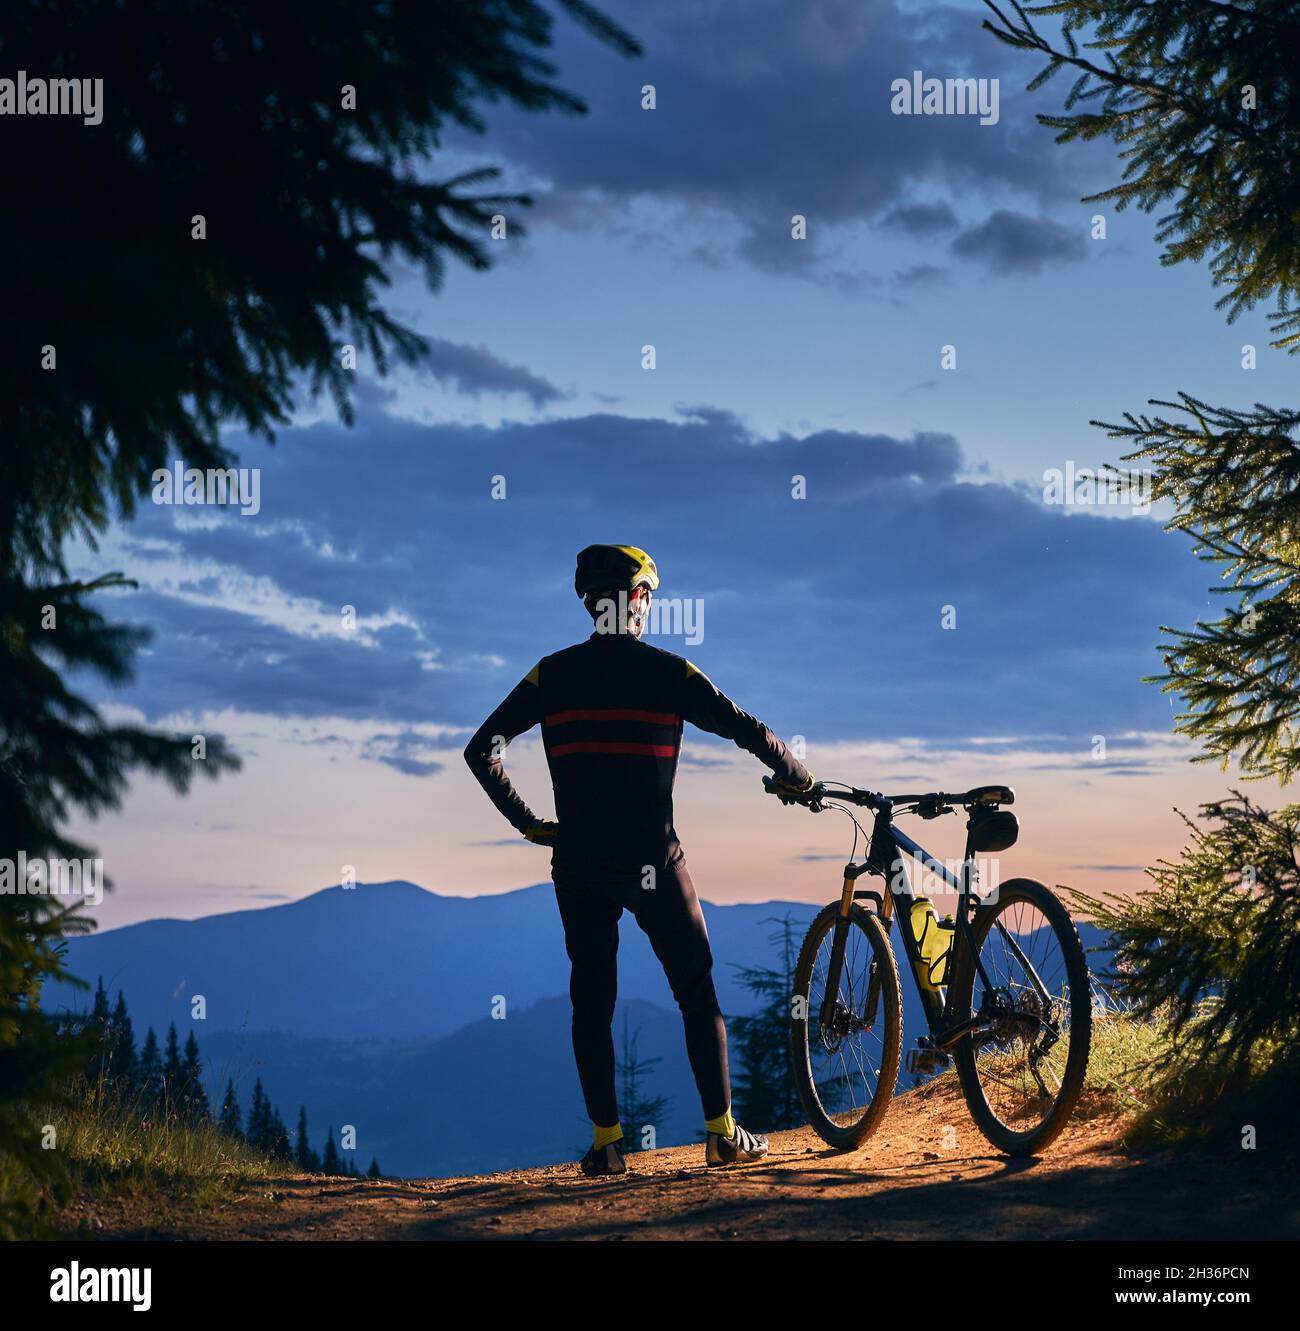 Rückansicht eines Radfahrers, der sein Fahrrad hält, und die wunderschöne Landschaft, die Berggipfel und den Sonnenuntergang, umgeben von Fichten, beobachtet. Quadratisches Bild. Aktives Lifestyle-Konzept Stockfoto